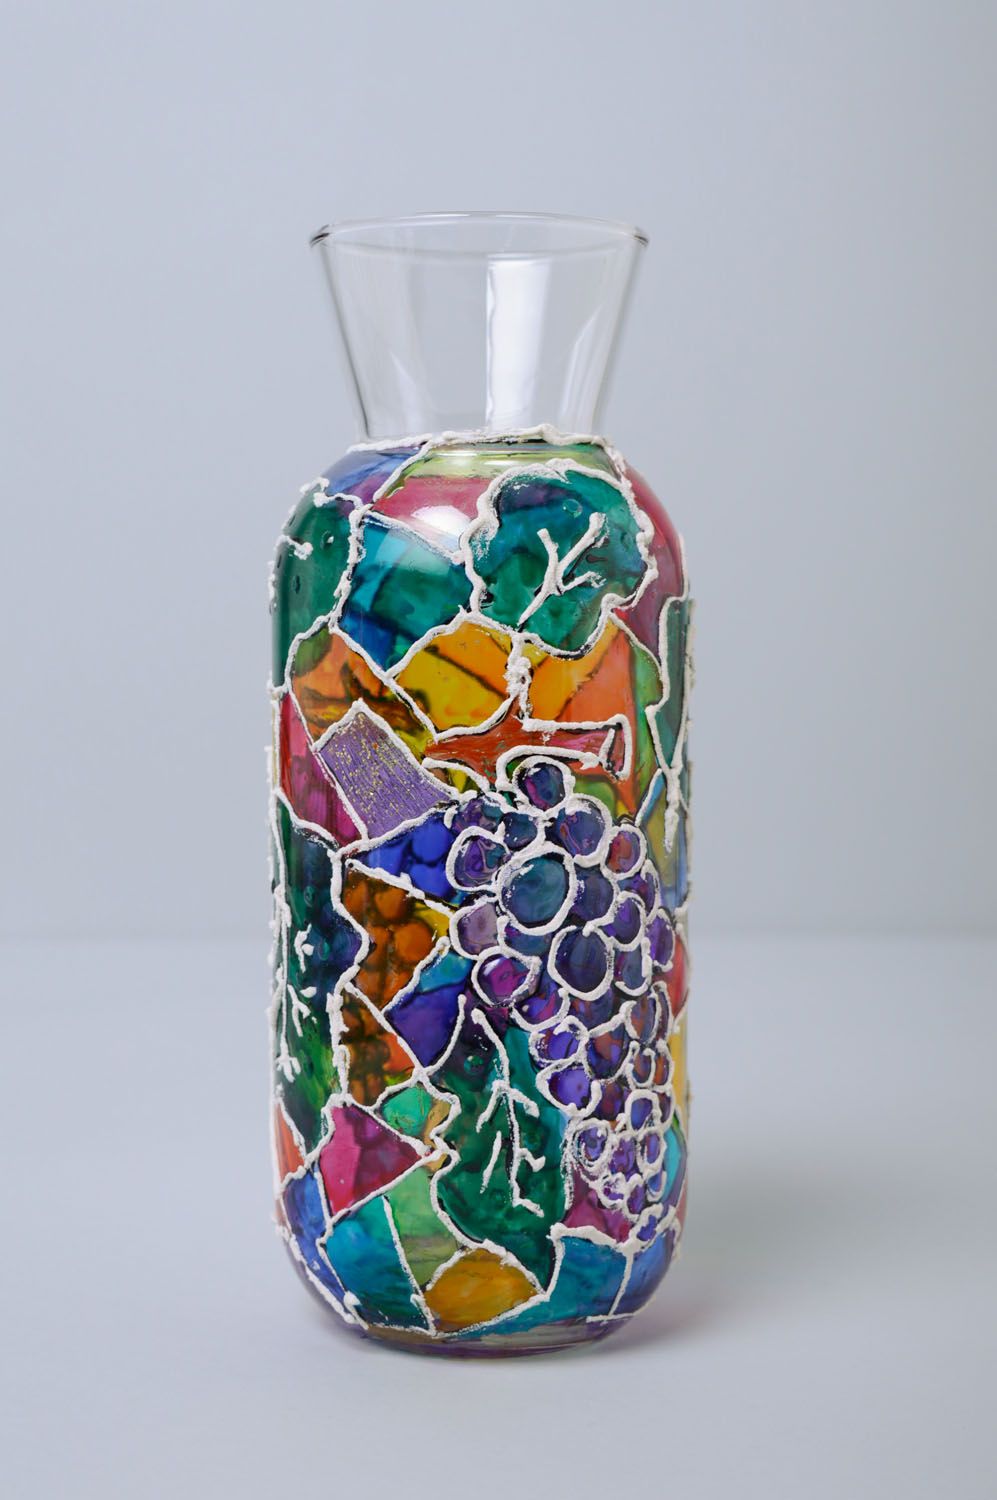 Стеклянная ваза расписанная витражными красками фото 1